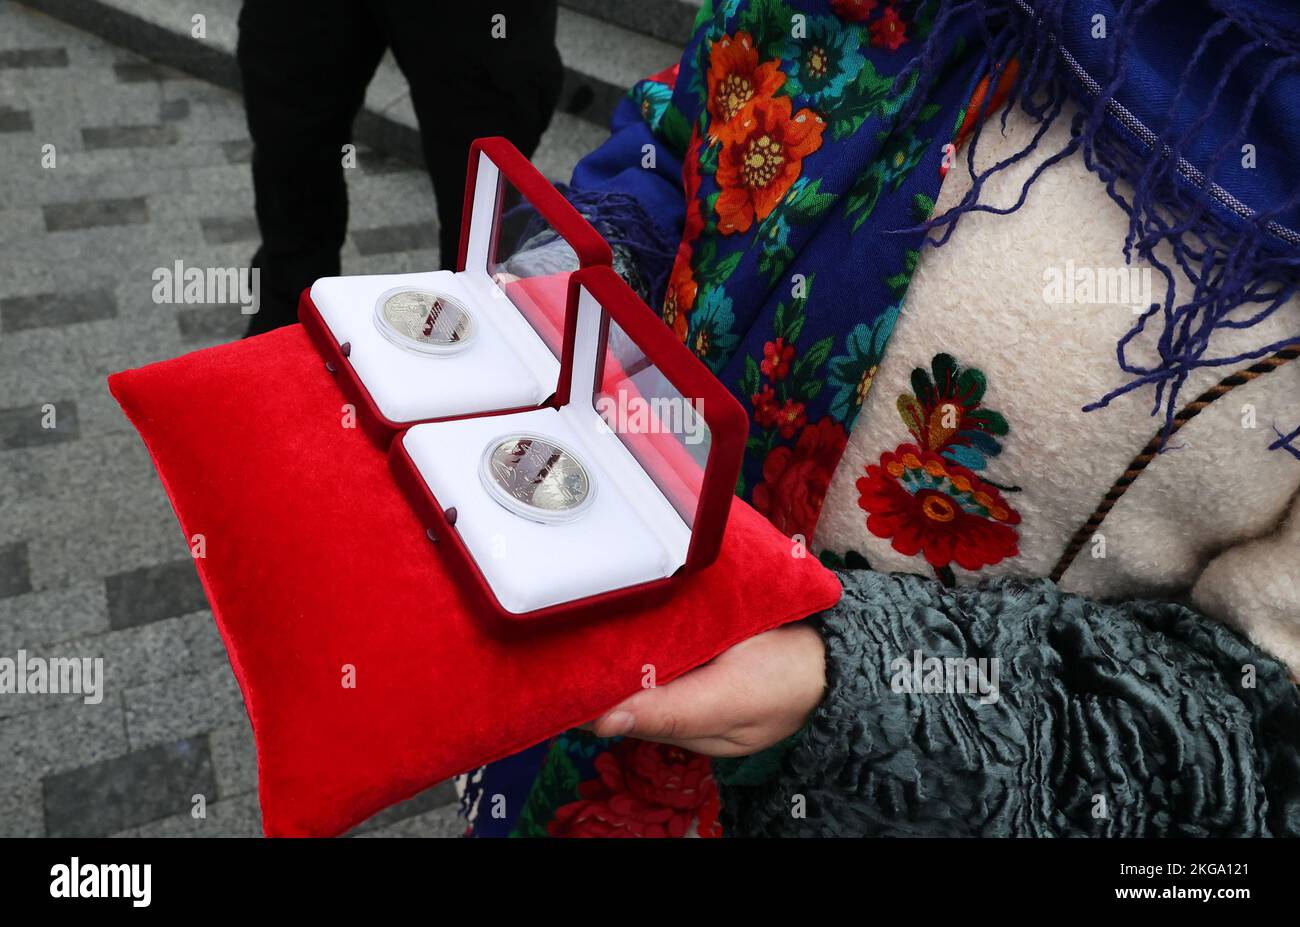 KHARKIV, UCRAINA - 21 NOVEMBRE 2022 - le medaglie commemorative 'Kharkiv - Città degli Eroi' sono raffigurate durante la presentazione del giorno della dignità e della libertà, Kharkiv, Ucraina nord-orientale. Foto Stock